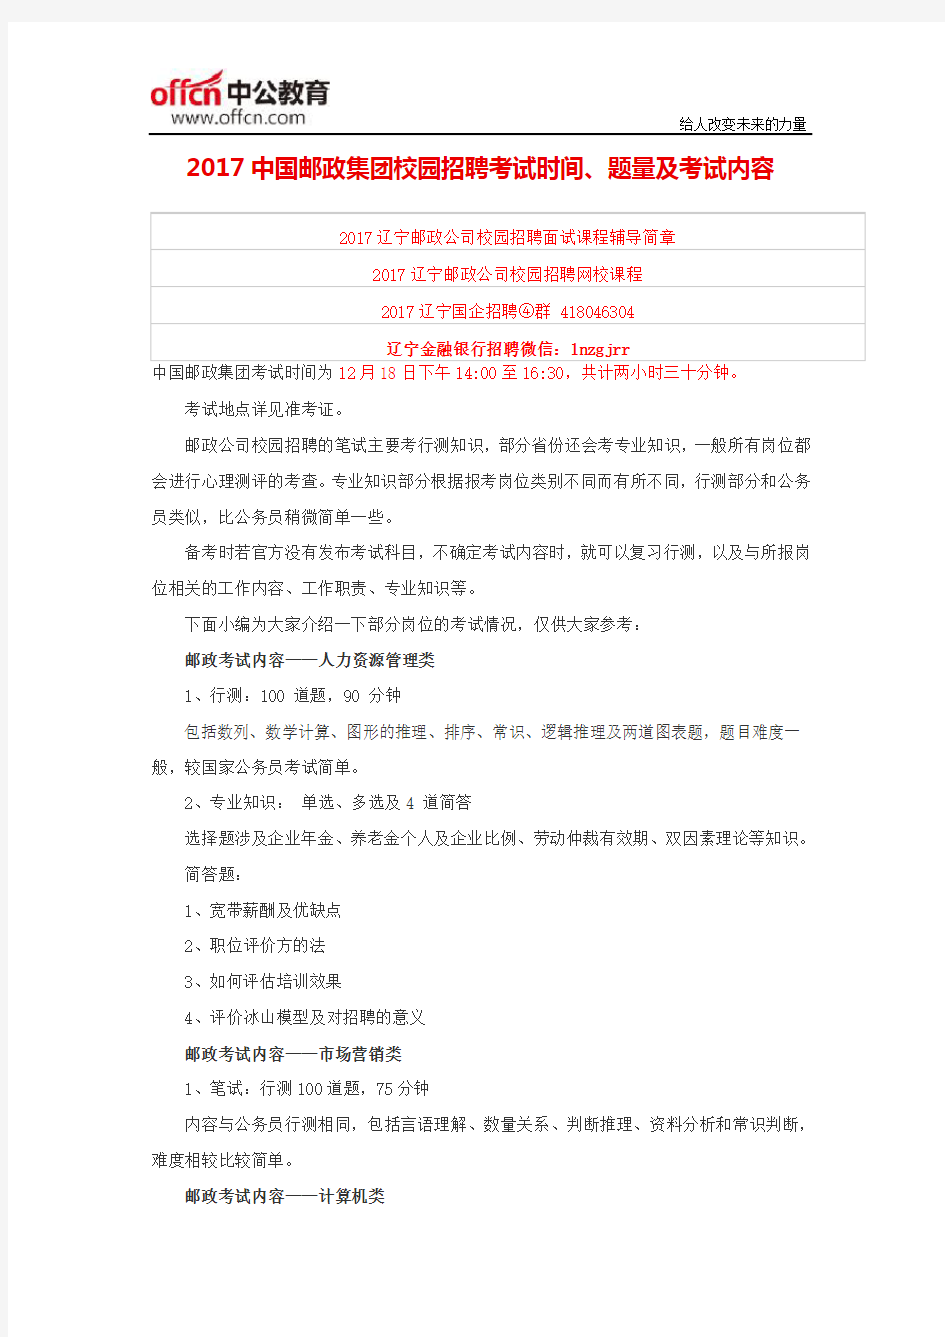 2017中国邮政集团校园招聘考试时间、题量及考试内容